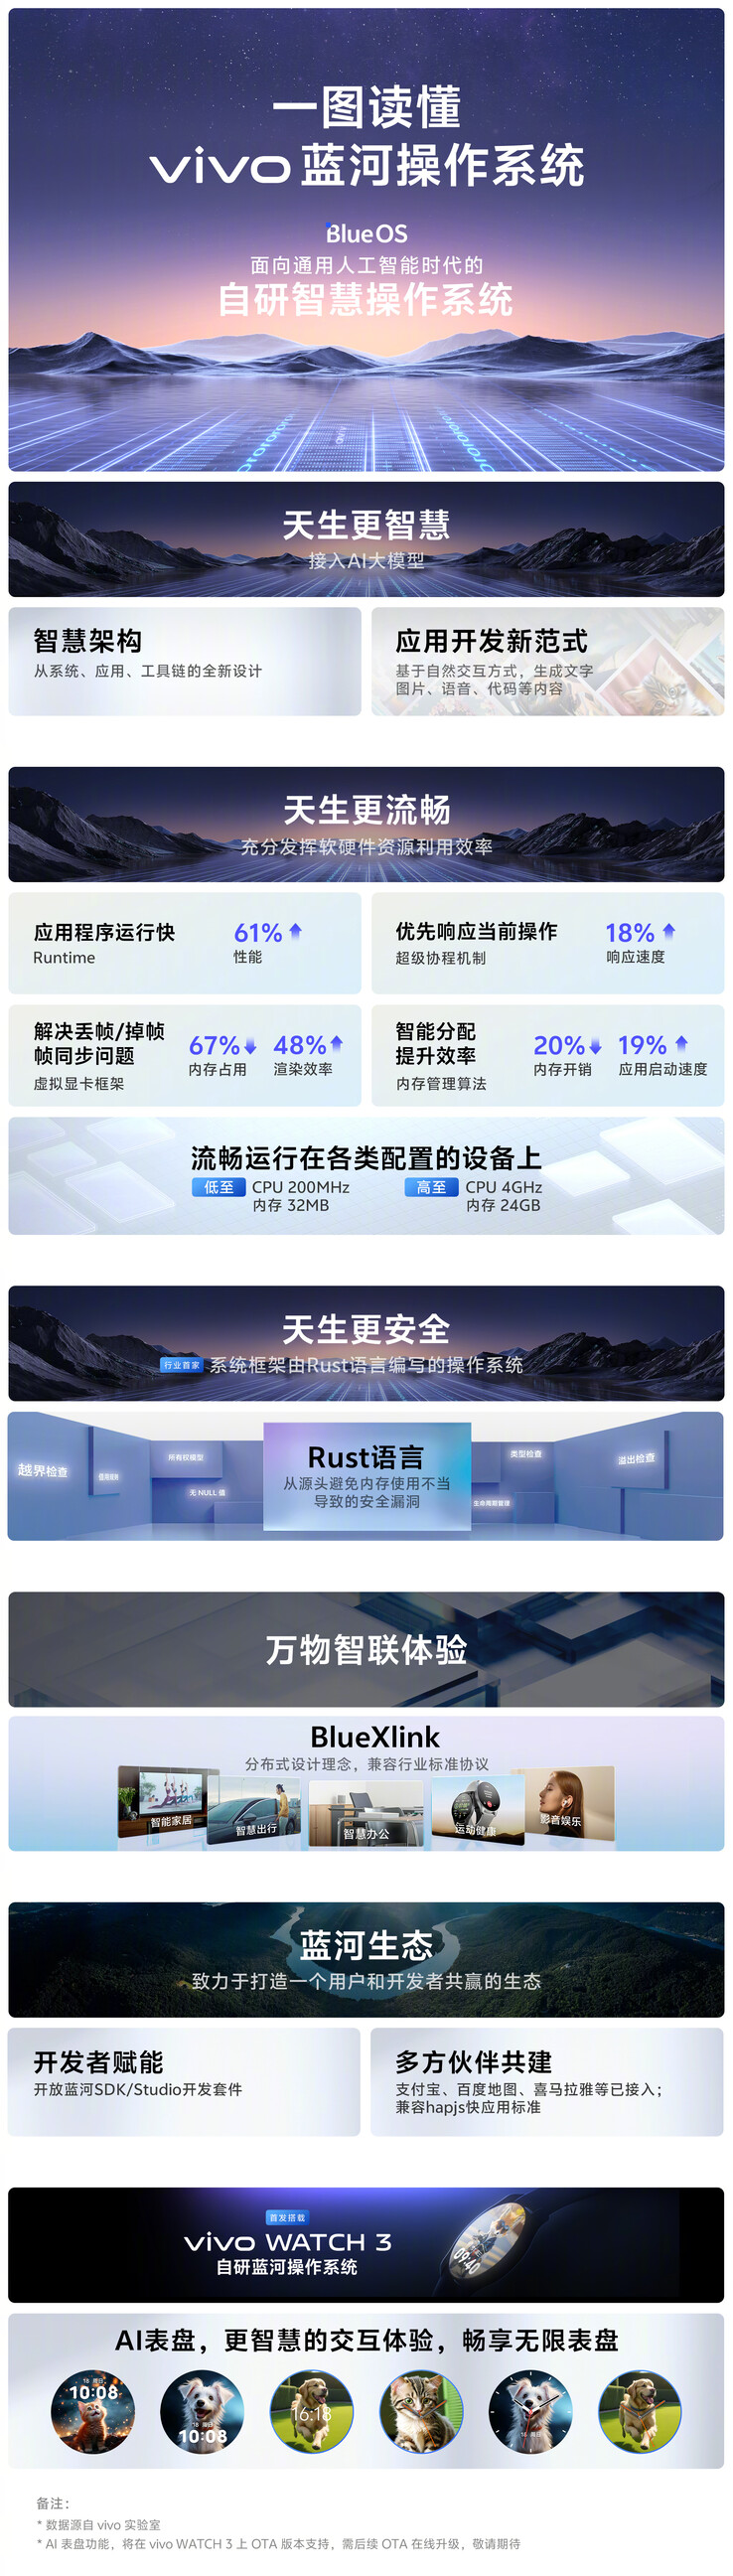 Vivo prijst zijn nieuwe BlueOS aan. (Bron: Vivo via Weibo)